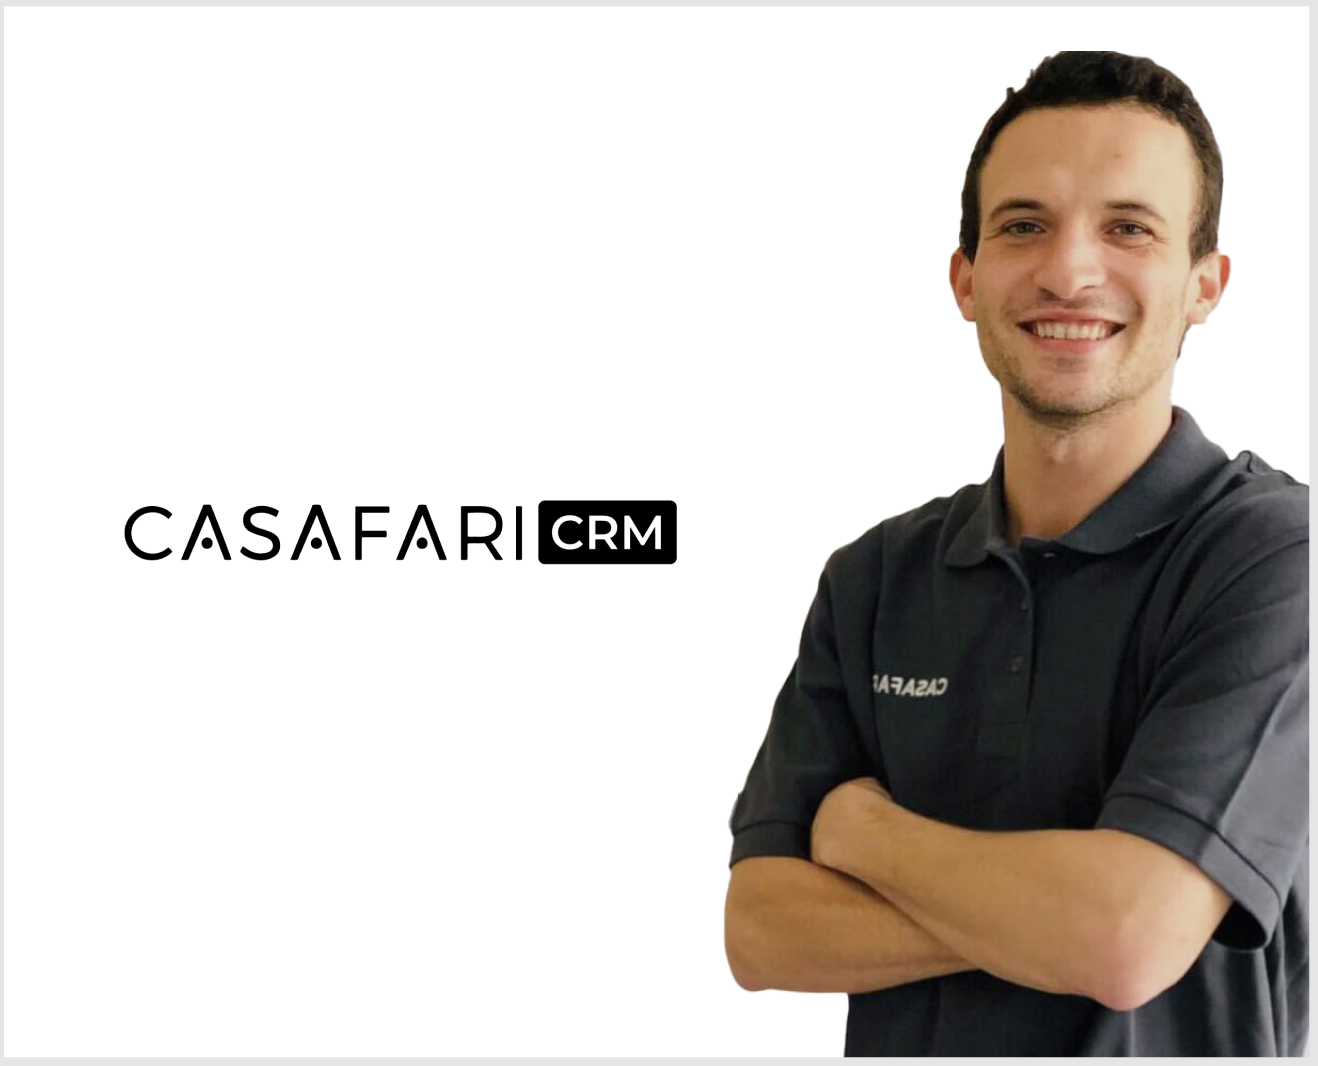 Afonso Azevedo, Account Manager del CASAFARI CRM